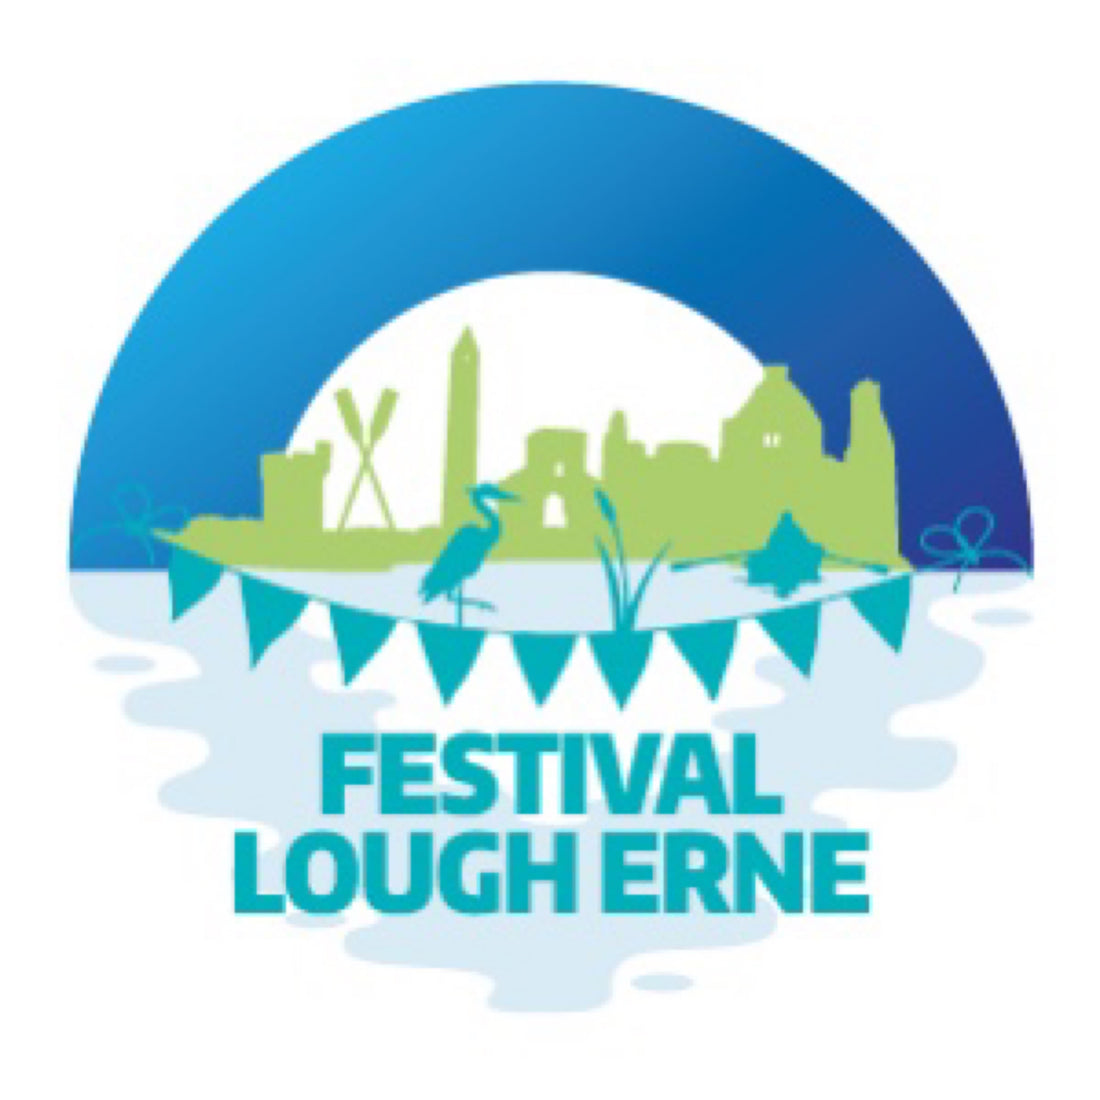 Festival Lough Erne returns this September